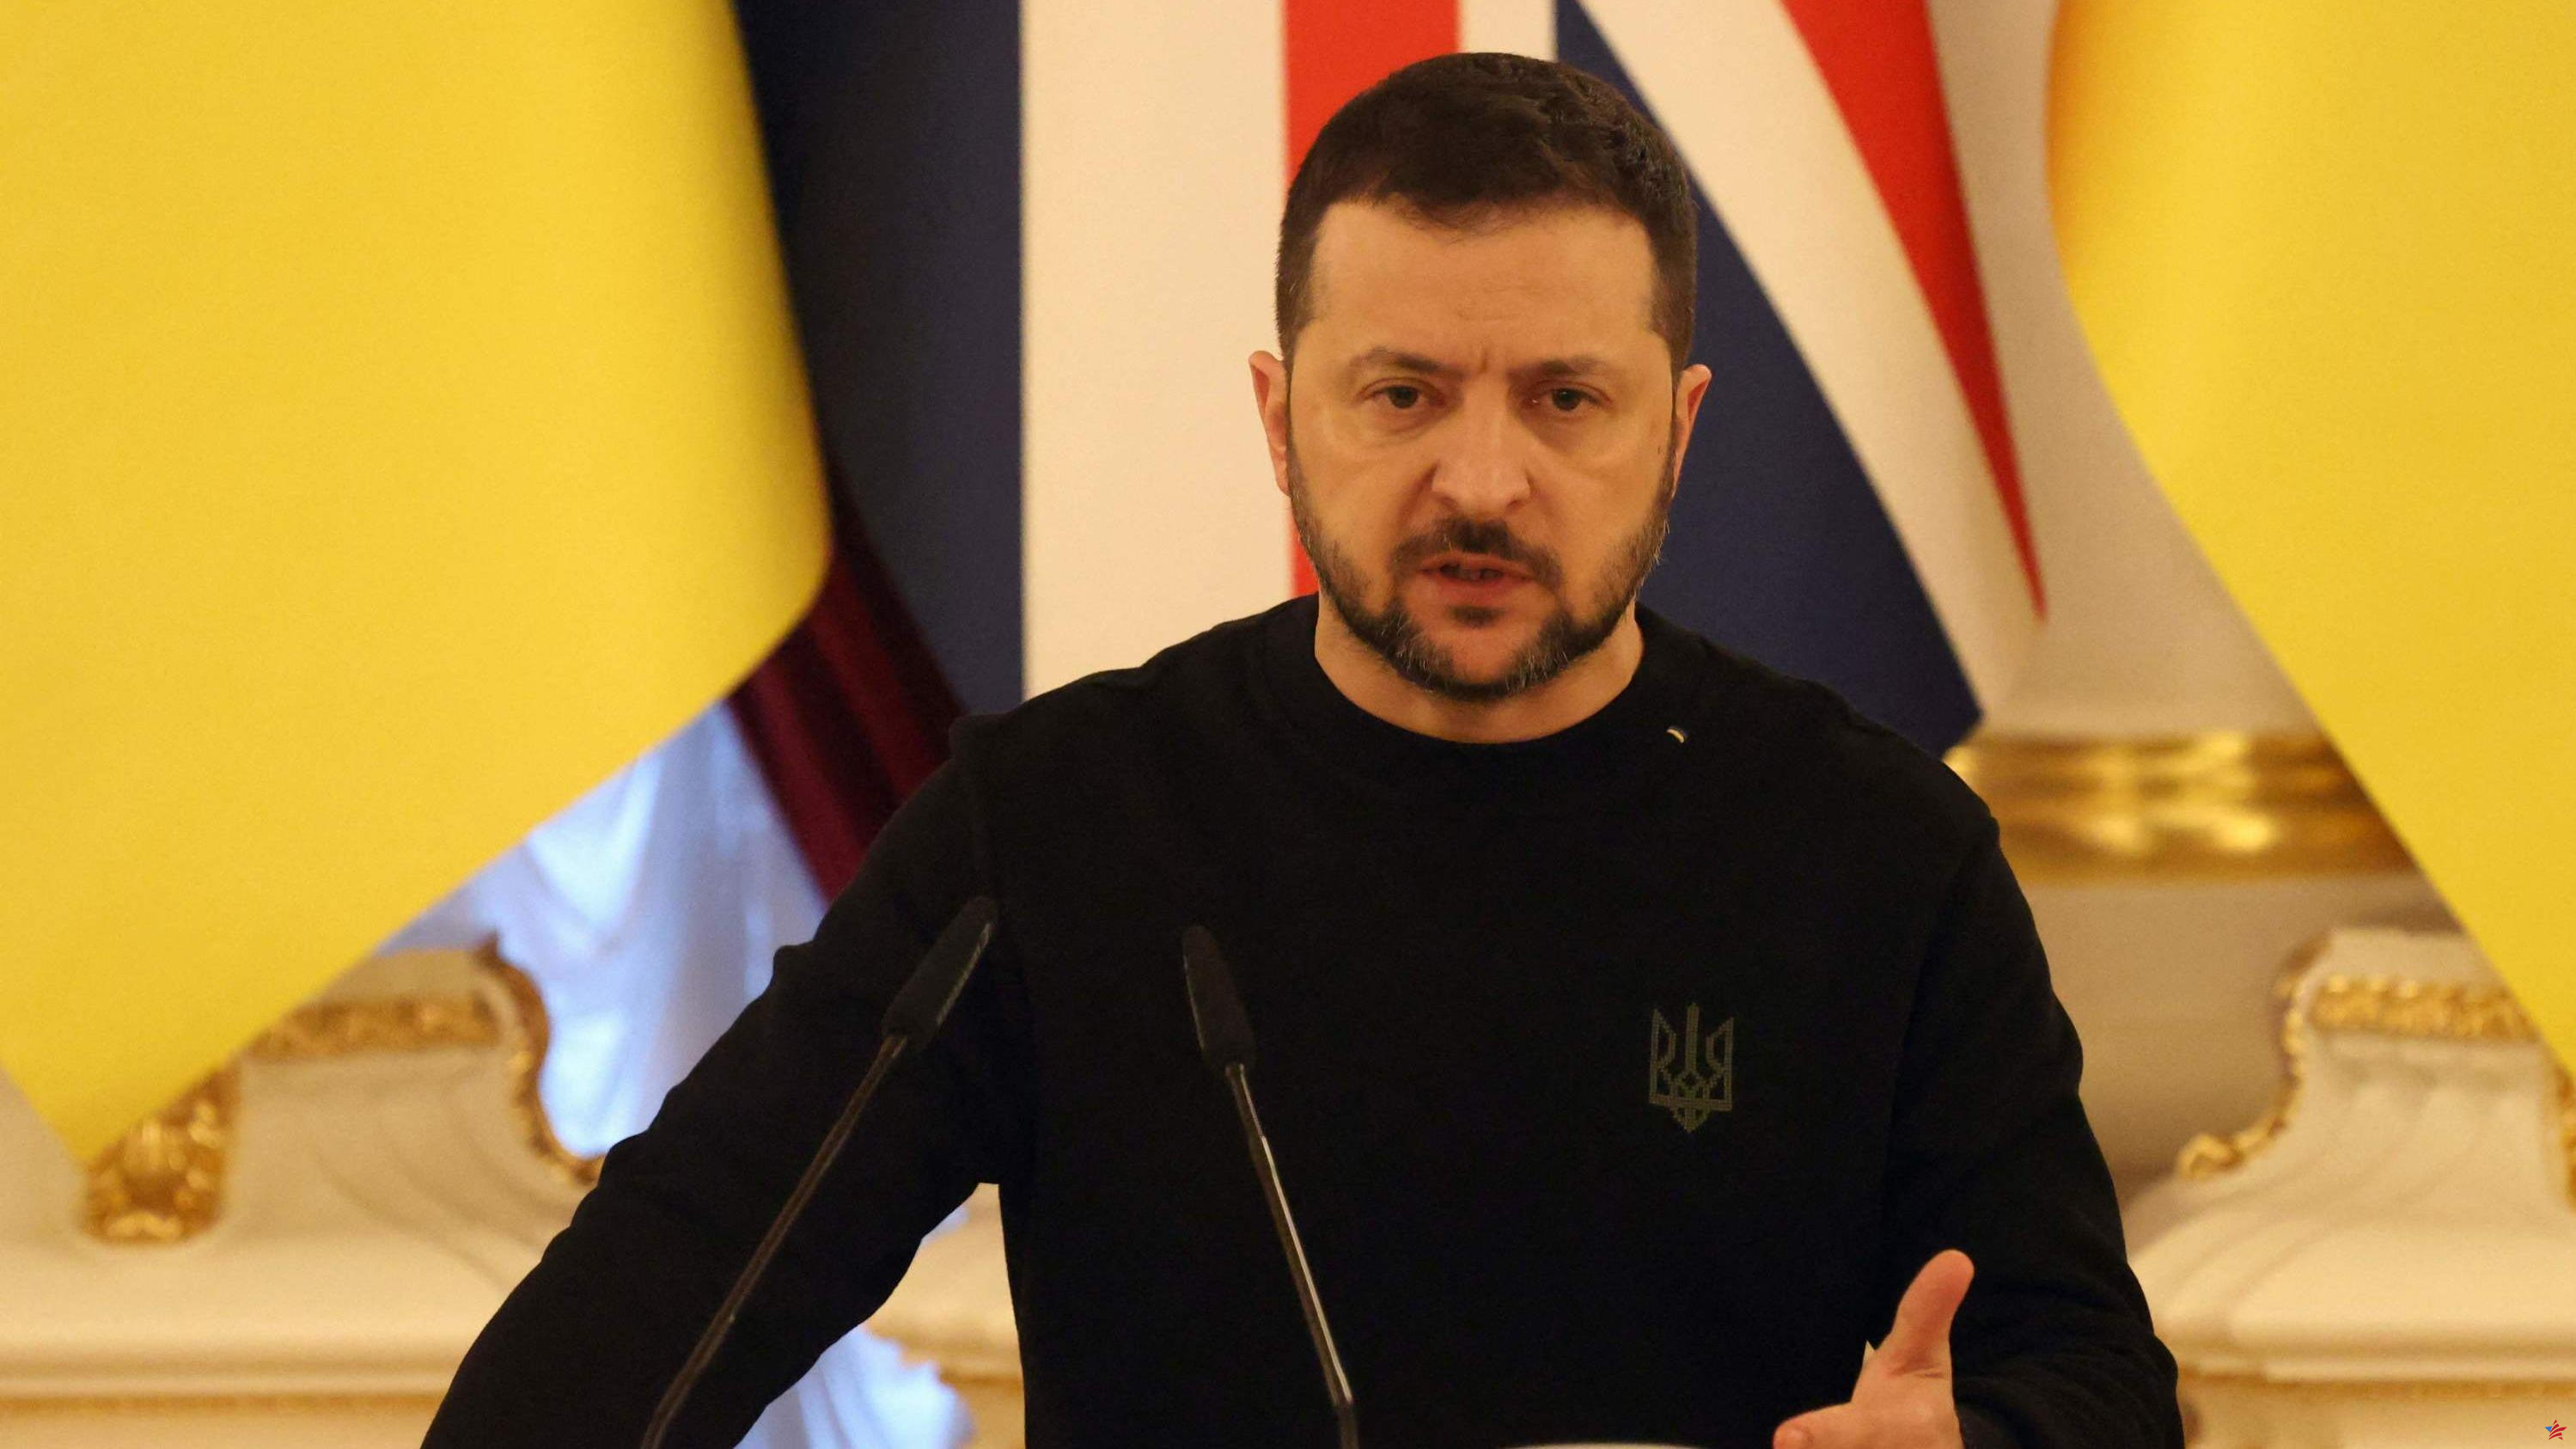 Guerra en Ucrania: Volodymyr Zelensky viajará a Suiza el lunes